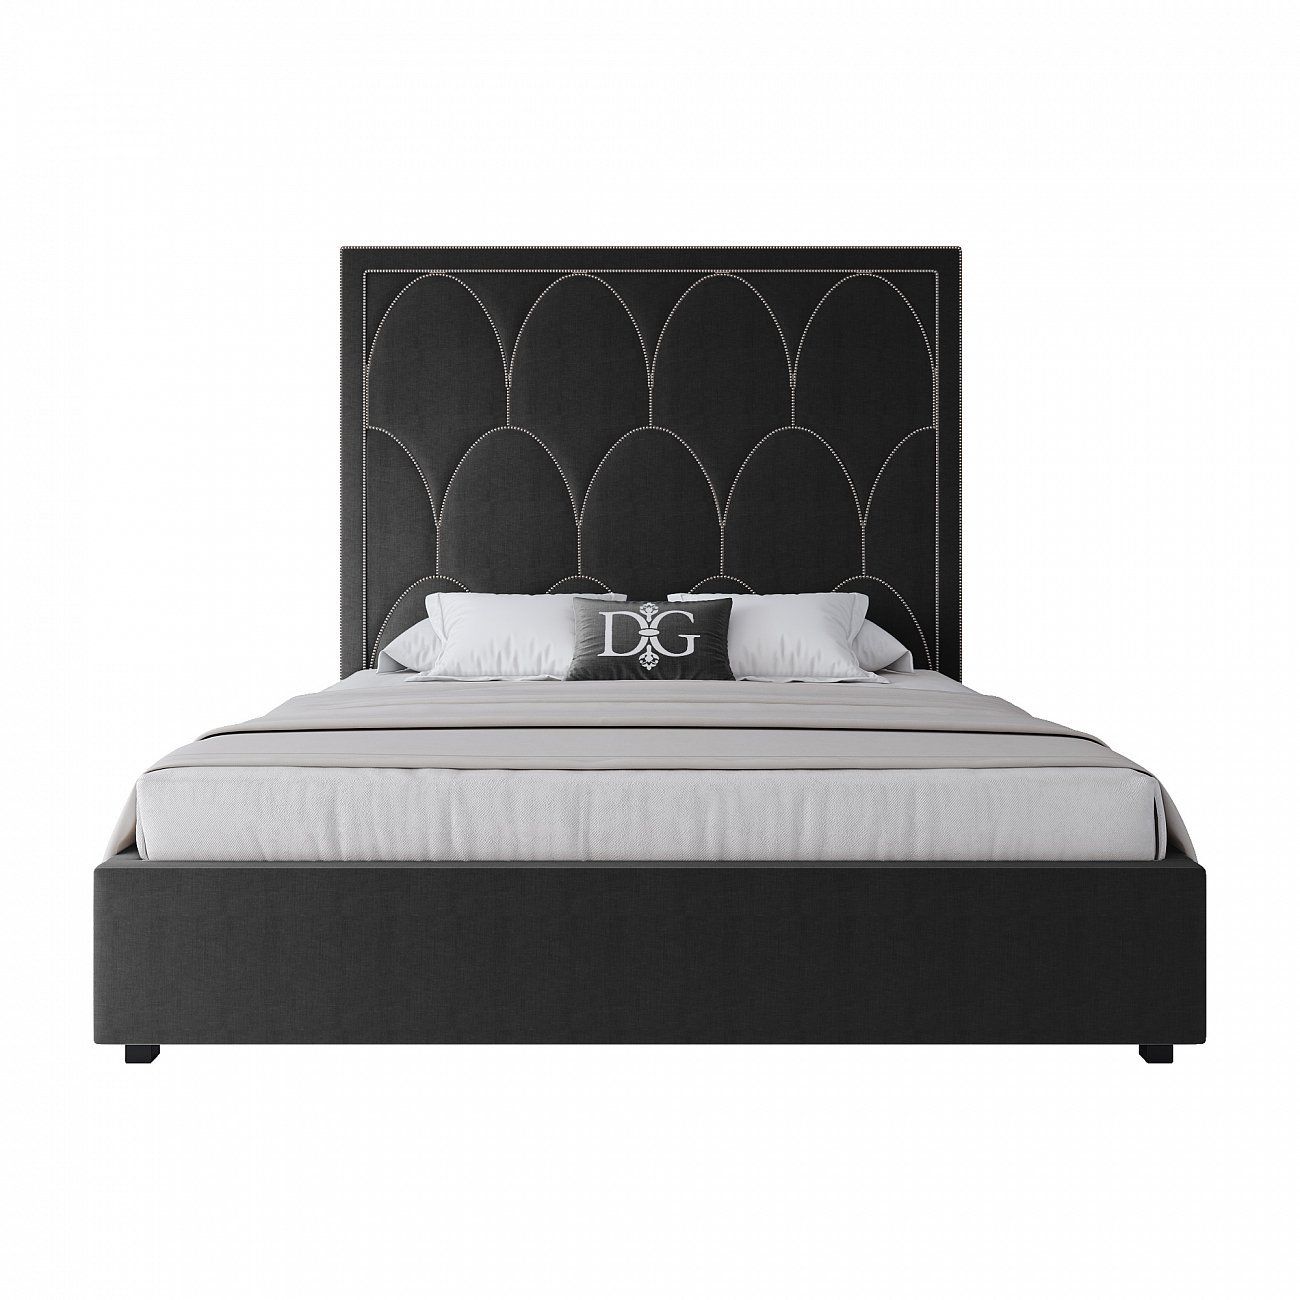 Double bed 180x200 black Petals Queen